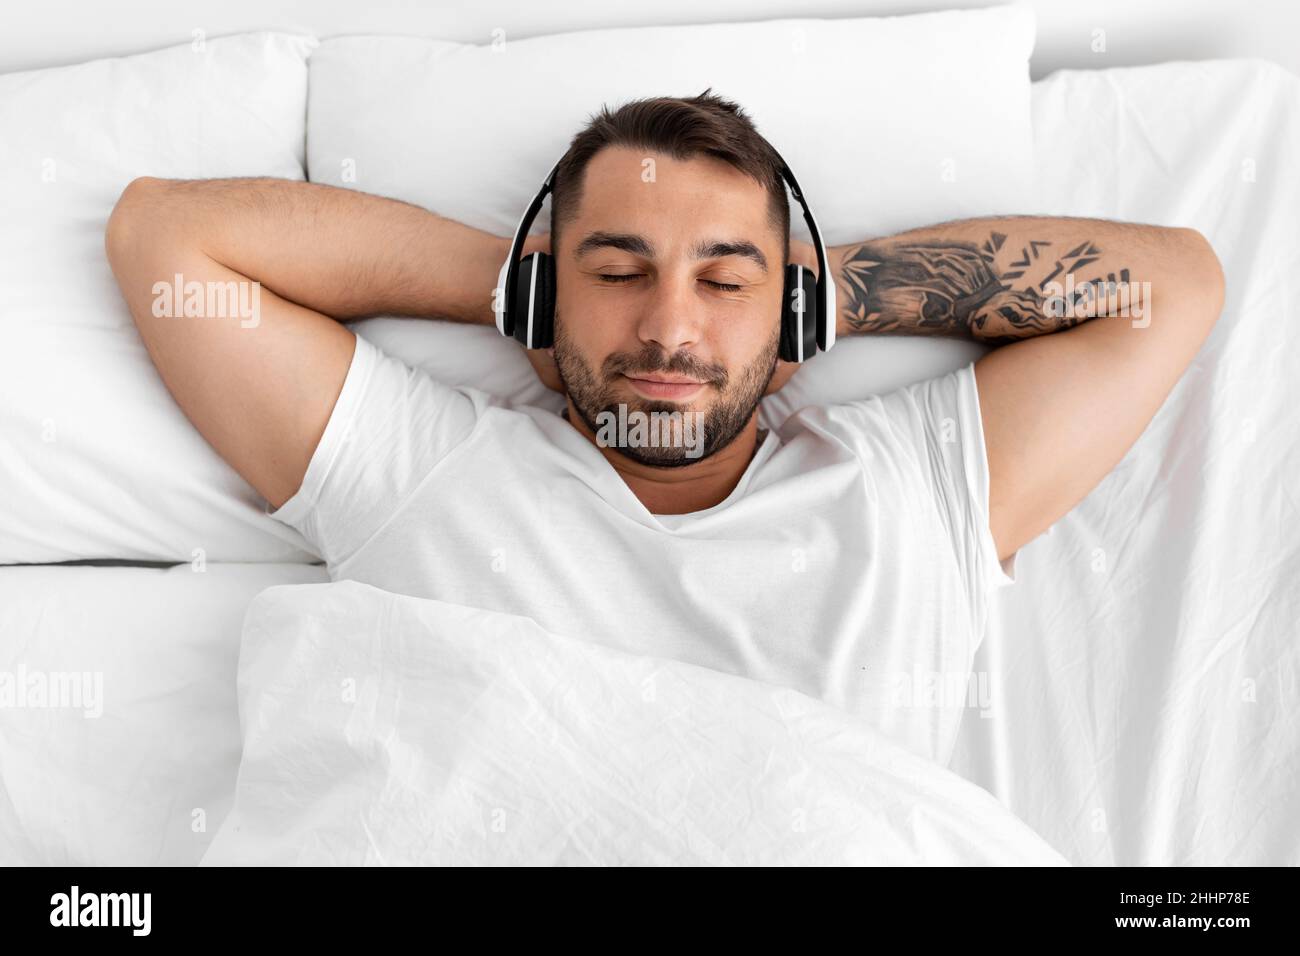 Satisfecho tranquilo calma joven europeo musculoso con los ojos cerrados en los auriculares se encuentra en la cama blanca Foto de stock